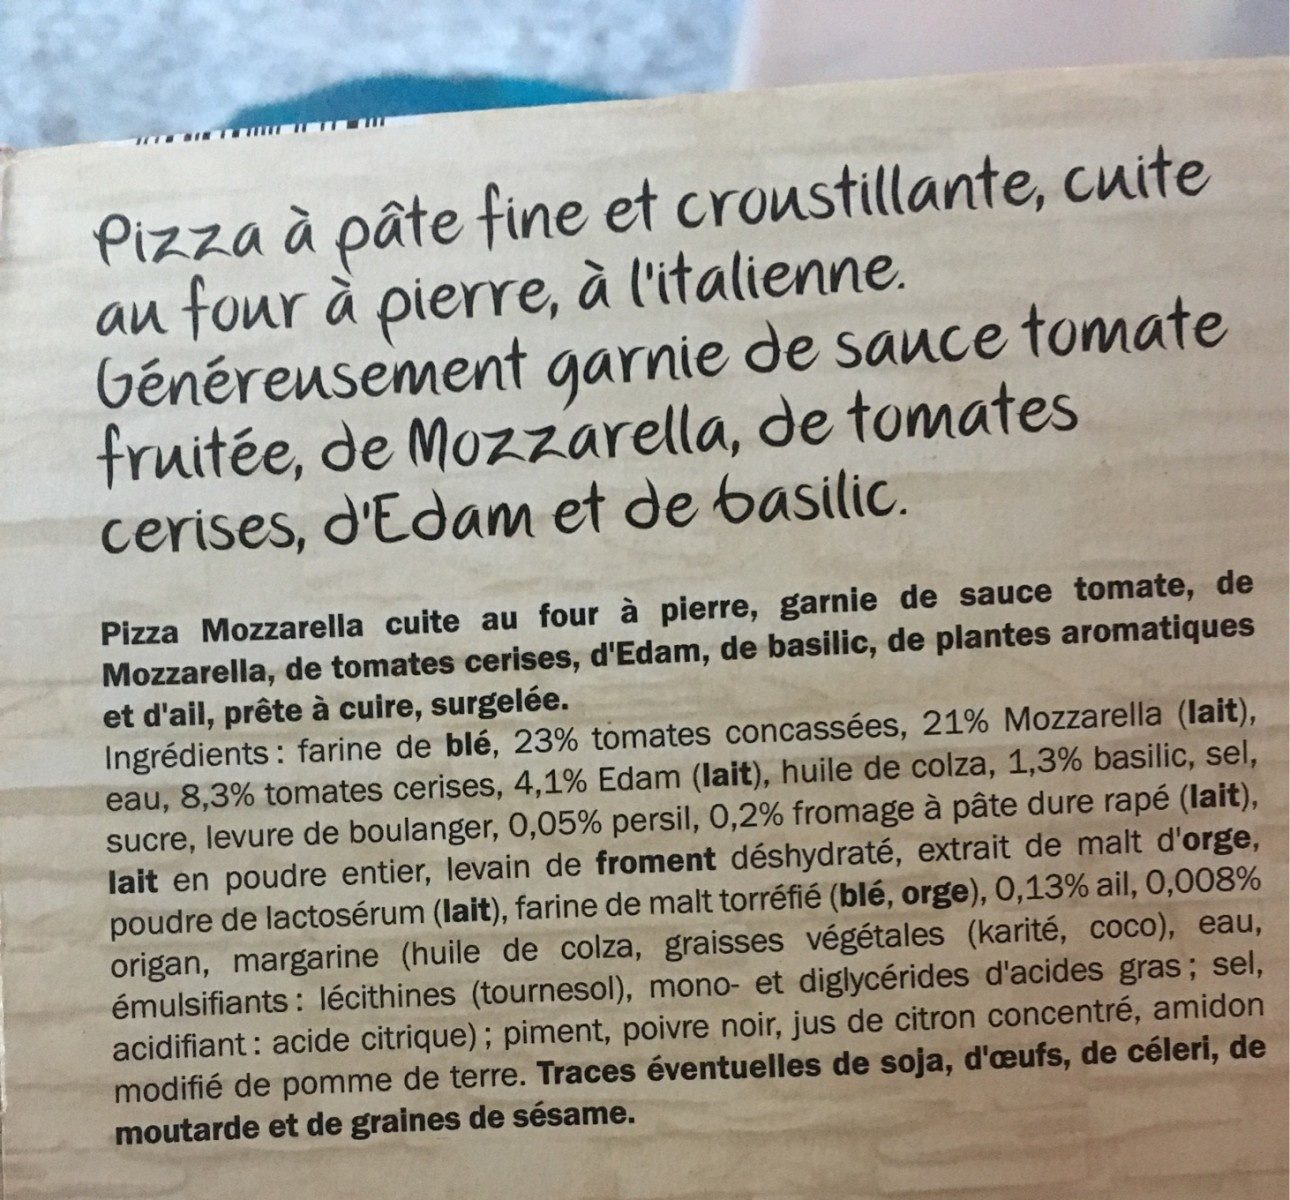 Pizza Mozzarella cuite sur pierre - Ingrédients